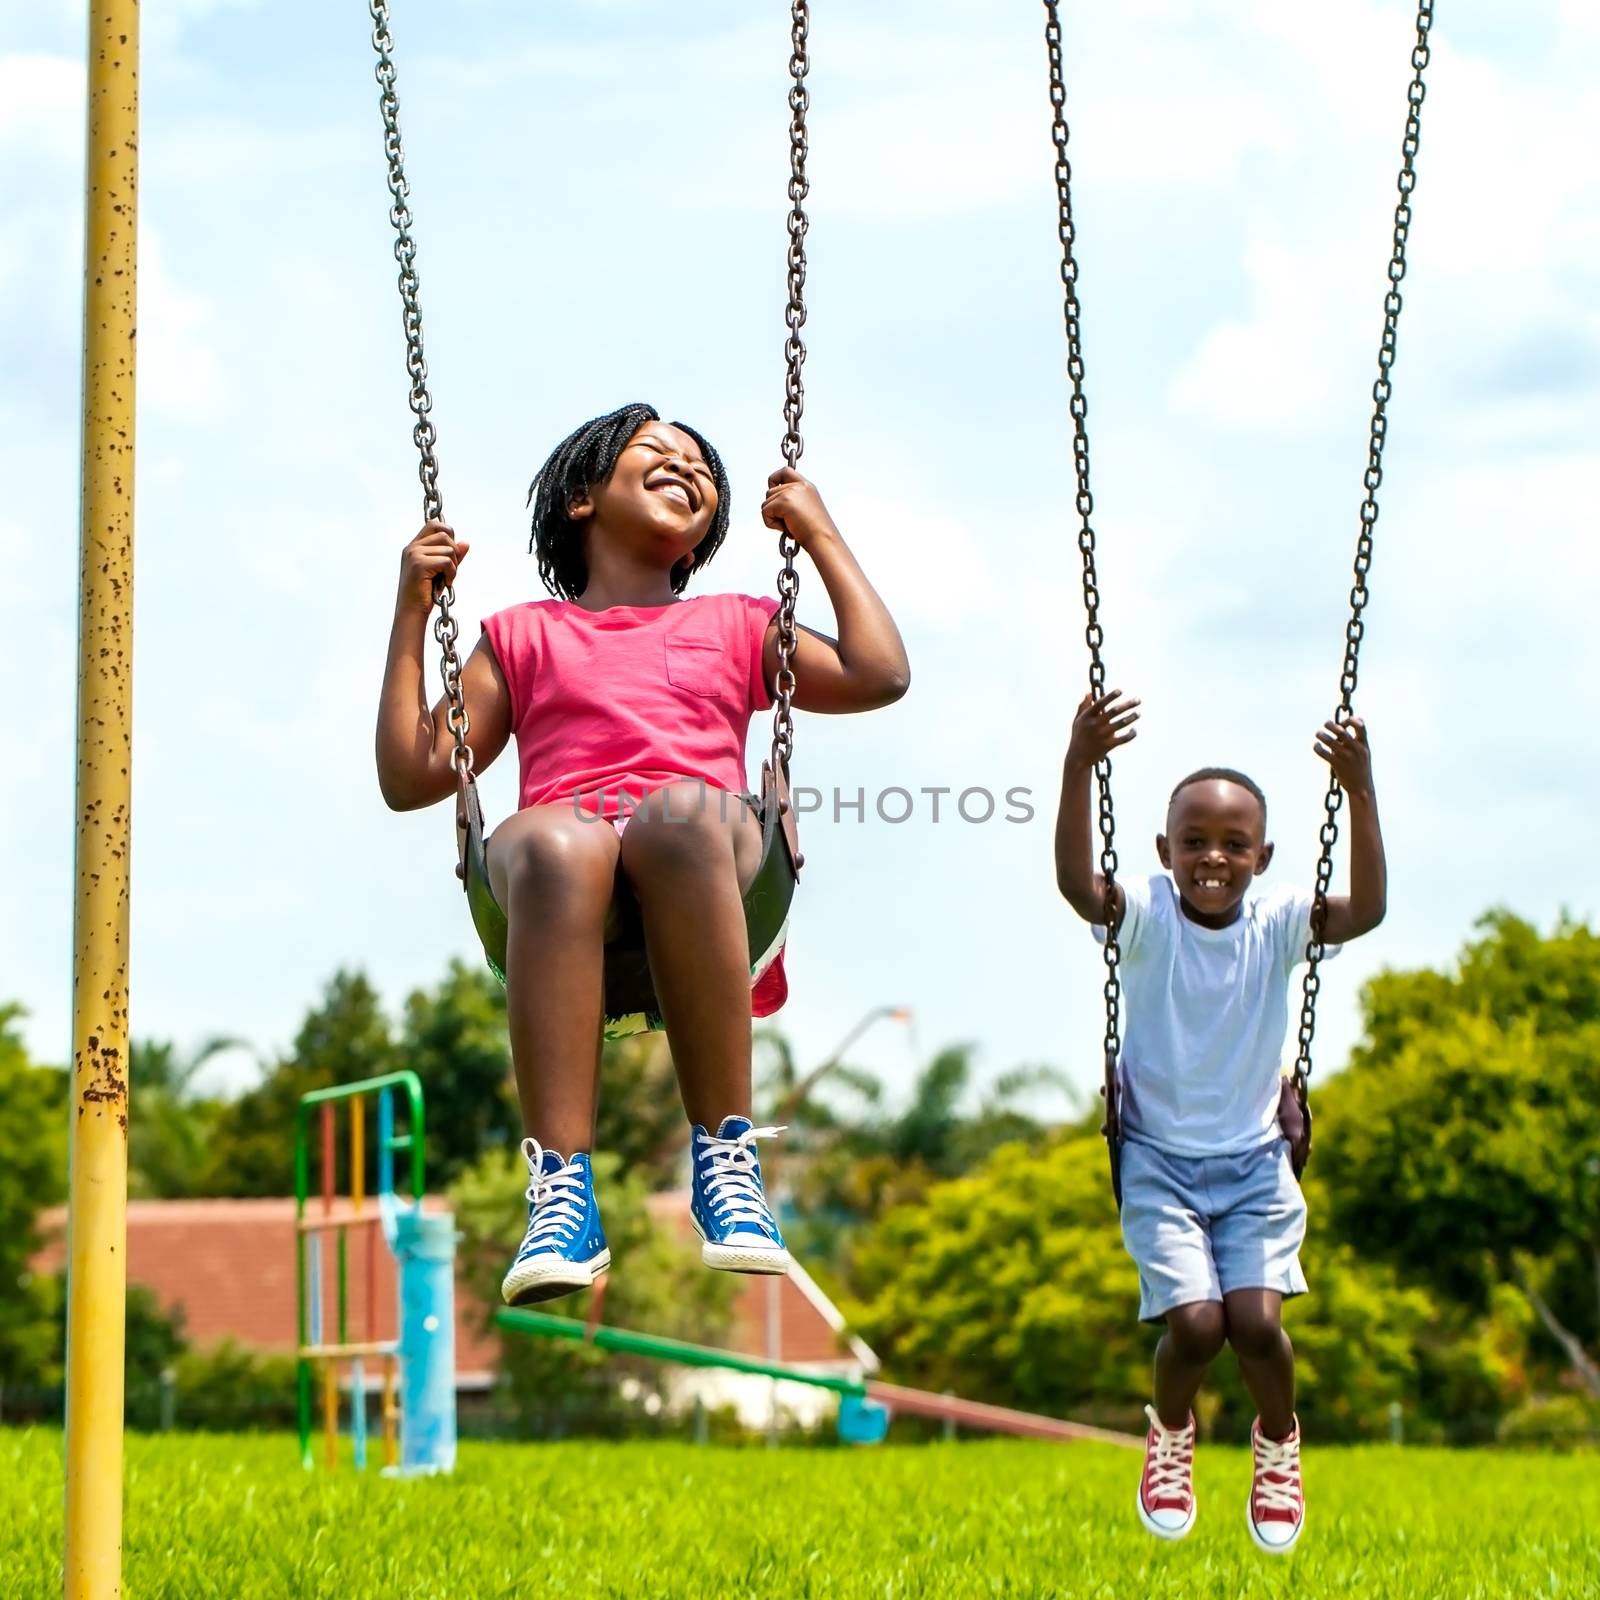 African kids having fun swinging in park. by karelnoppe